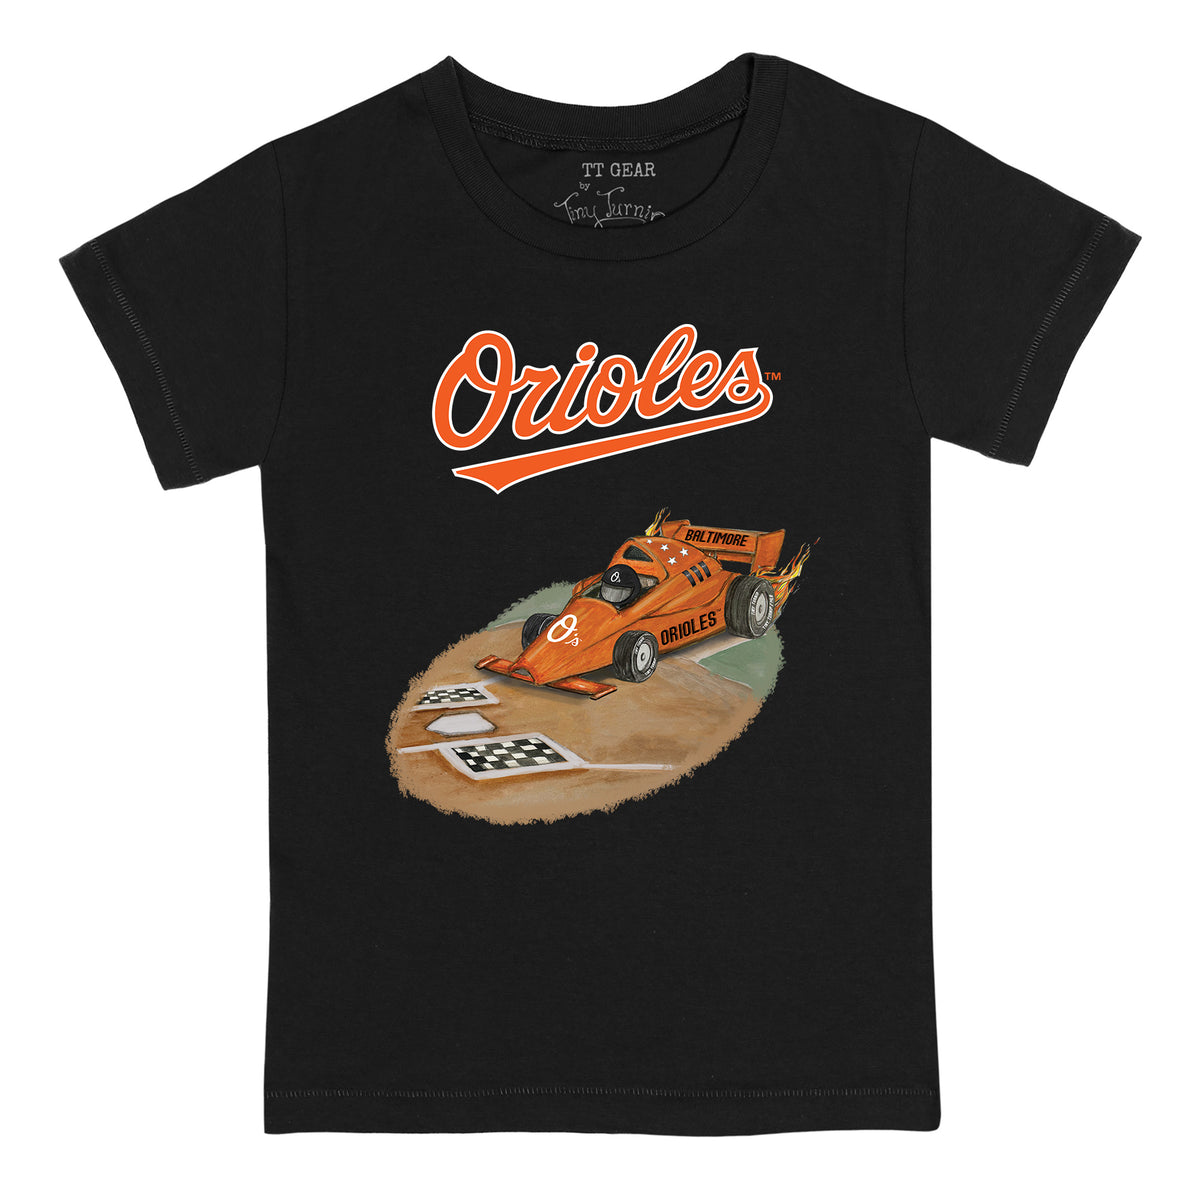 Baltimore Orioles Race Car Tee Shirt